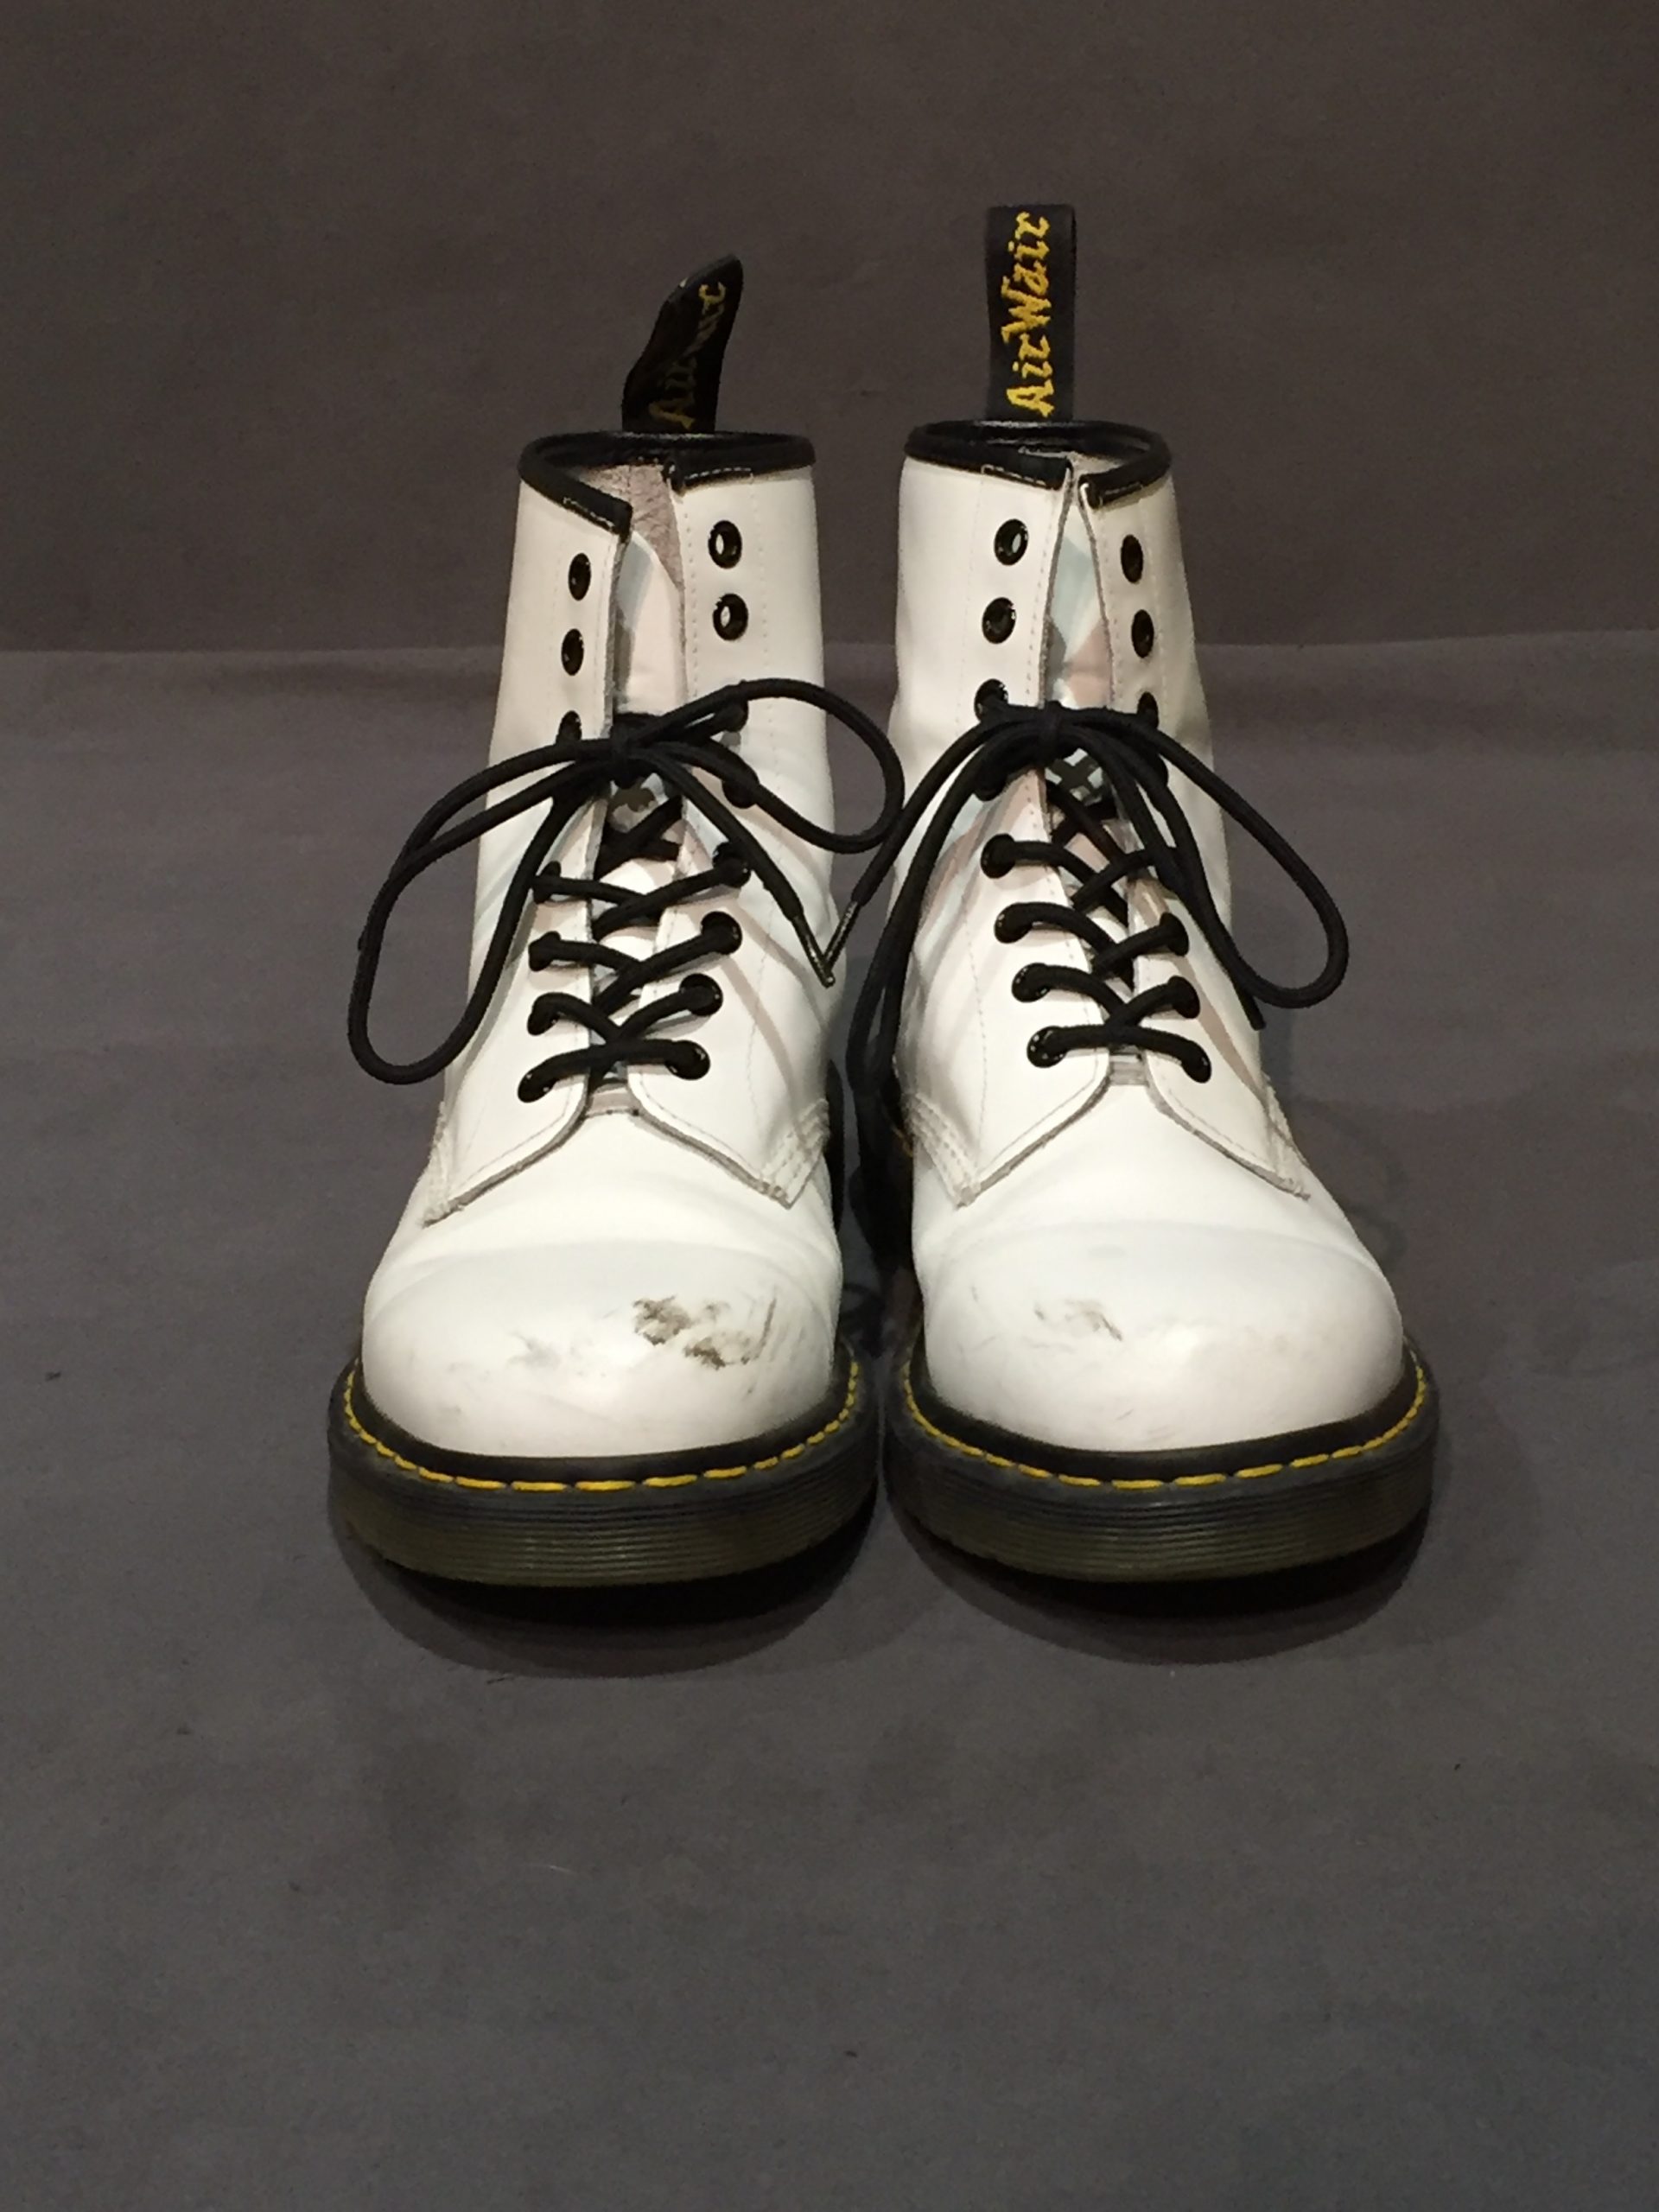 White lace-up Dr. Marten's combat boots